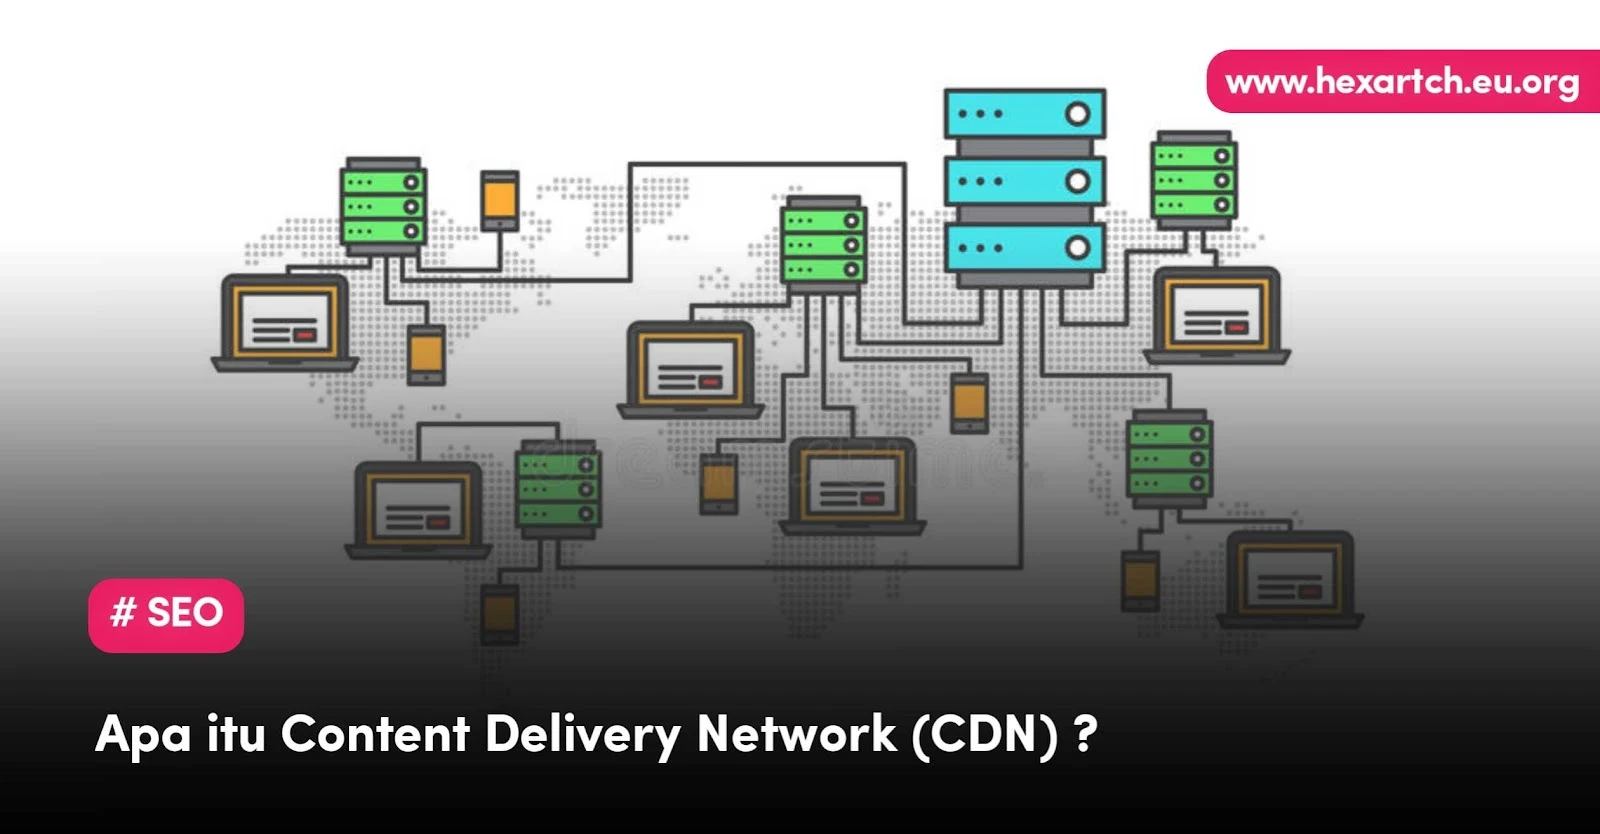 Content Delivery Network (CDN) Pengertian, Cara Kerja, Manfaat, Kerugian dan Contoh